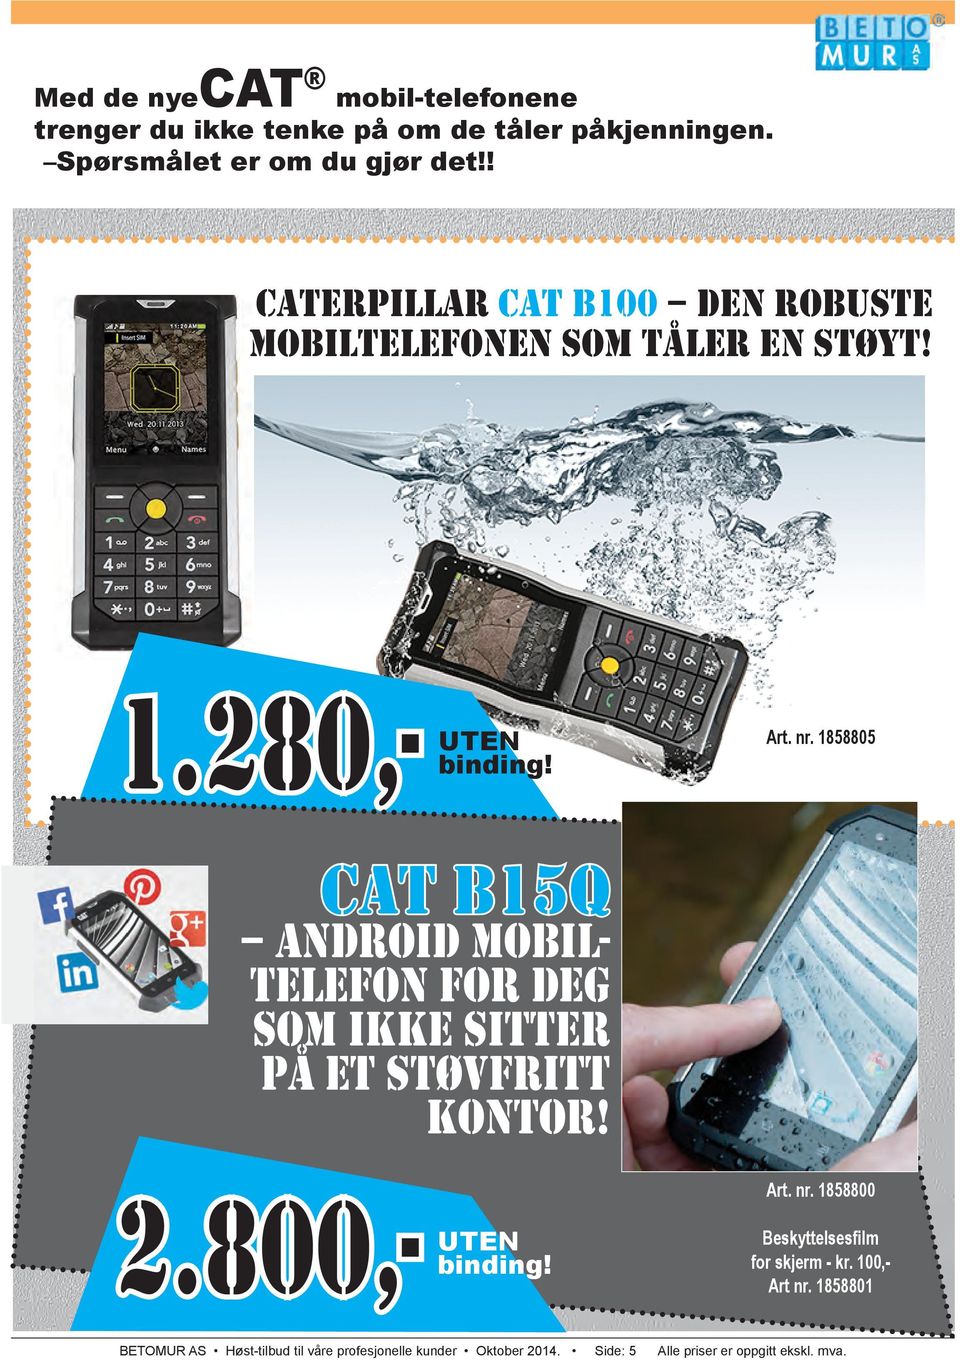 1858805 cat b15q android mobiltelefon for deg som ikke sitter på et støvfritt kontor! 2.800,- UTEN binding! Art. nr.